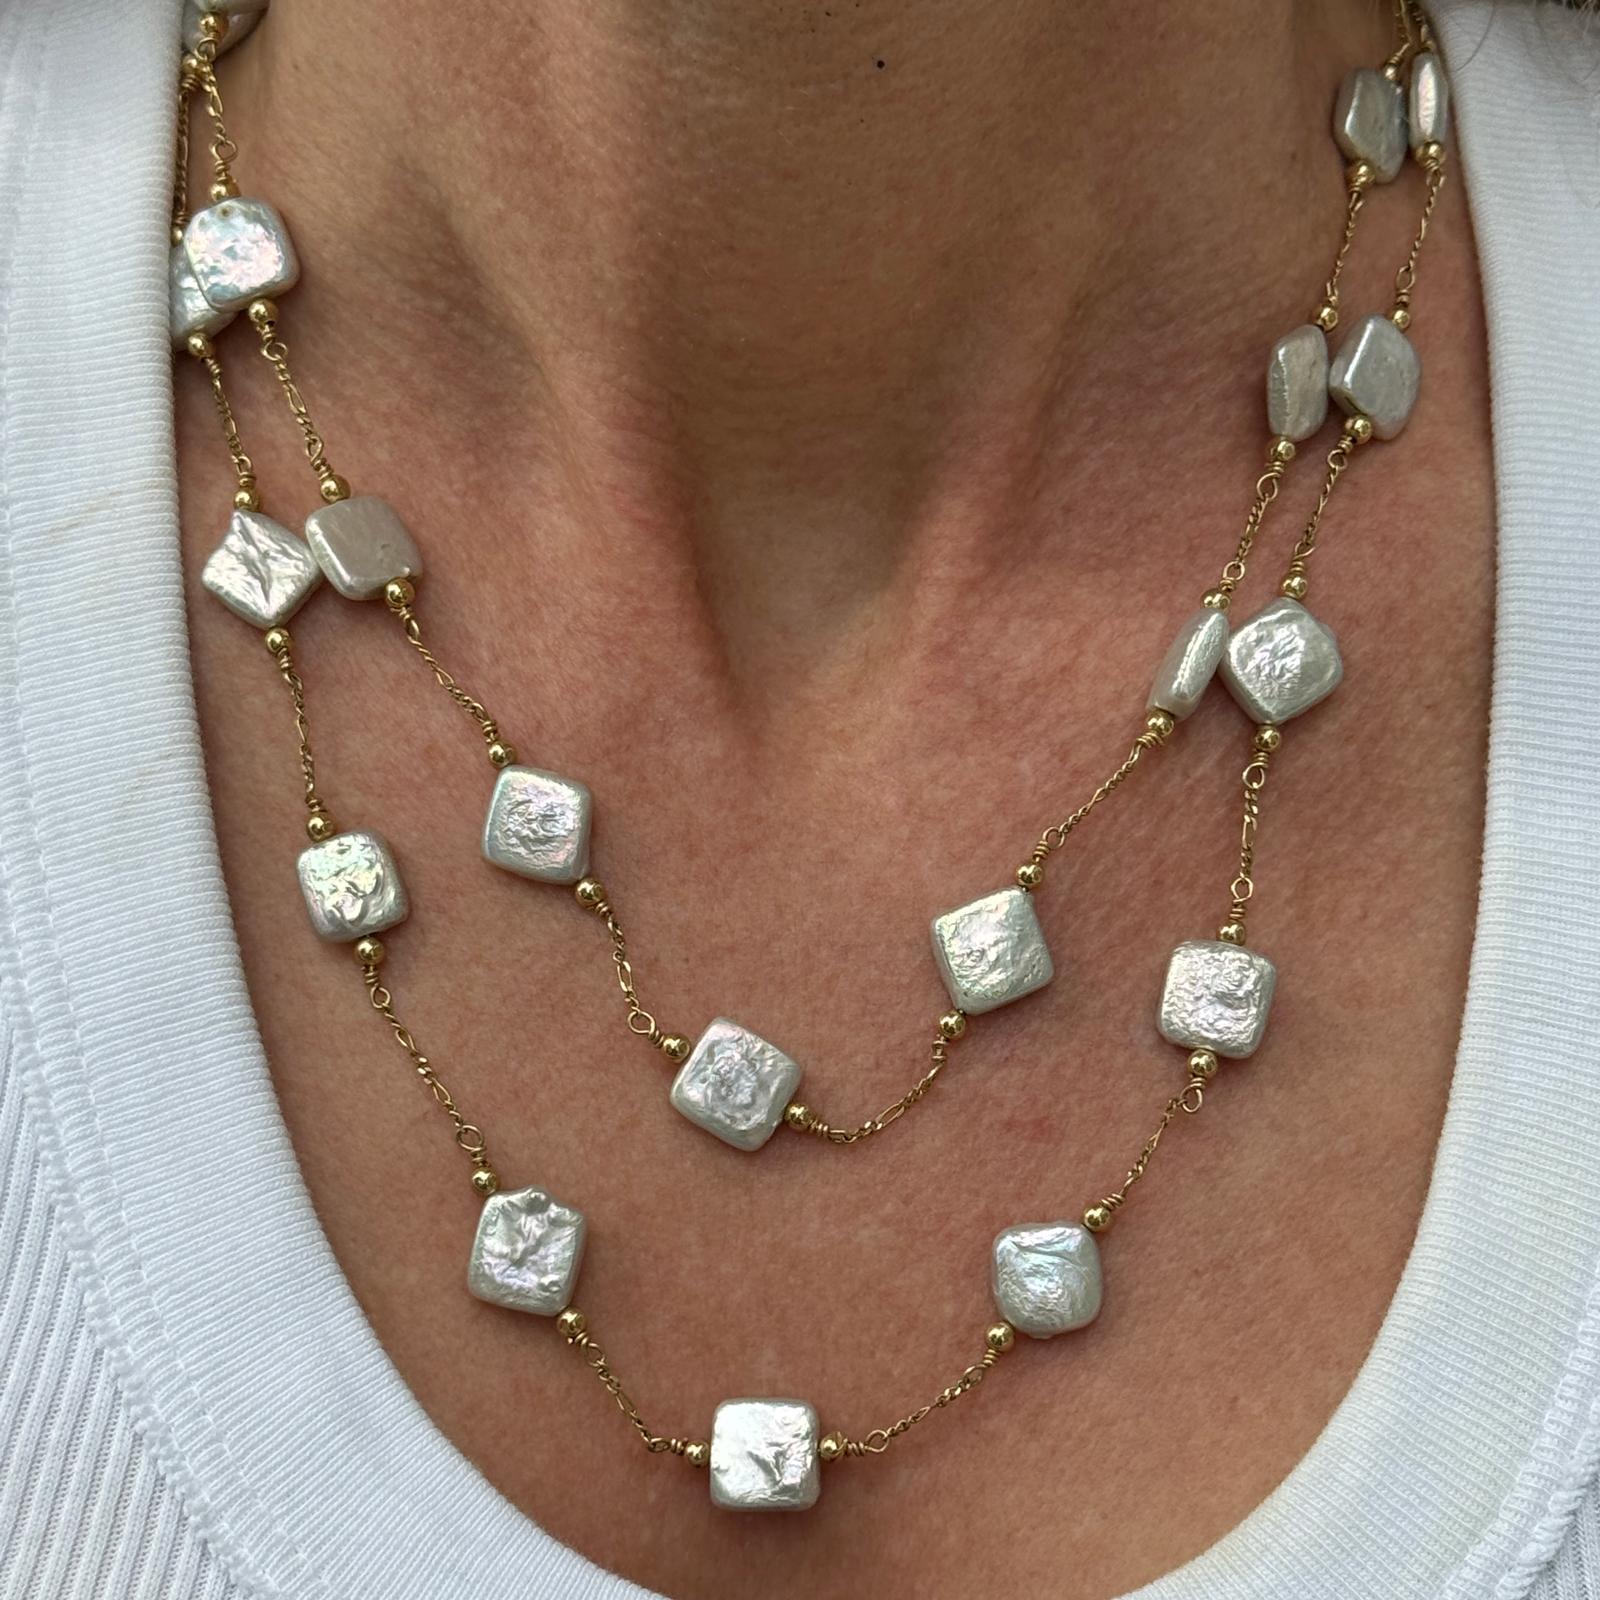 Feminine, zweireihige Perlenkette aus 14 Karat Gelbgold. Die Halskette besteht aus quadratischen Zuchtperlen, die in Abständen an einer zweireihigen Kette angebracht sind. Die Halskette misst 17 Zoll (kürzerer Strang) und 19 Zoll. Gewicht: 26 Gramm.